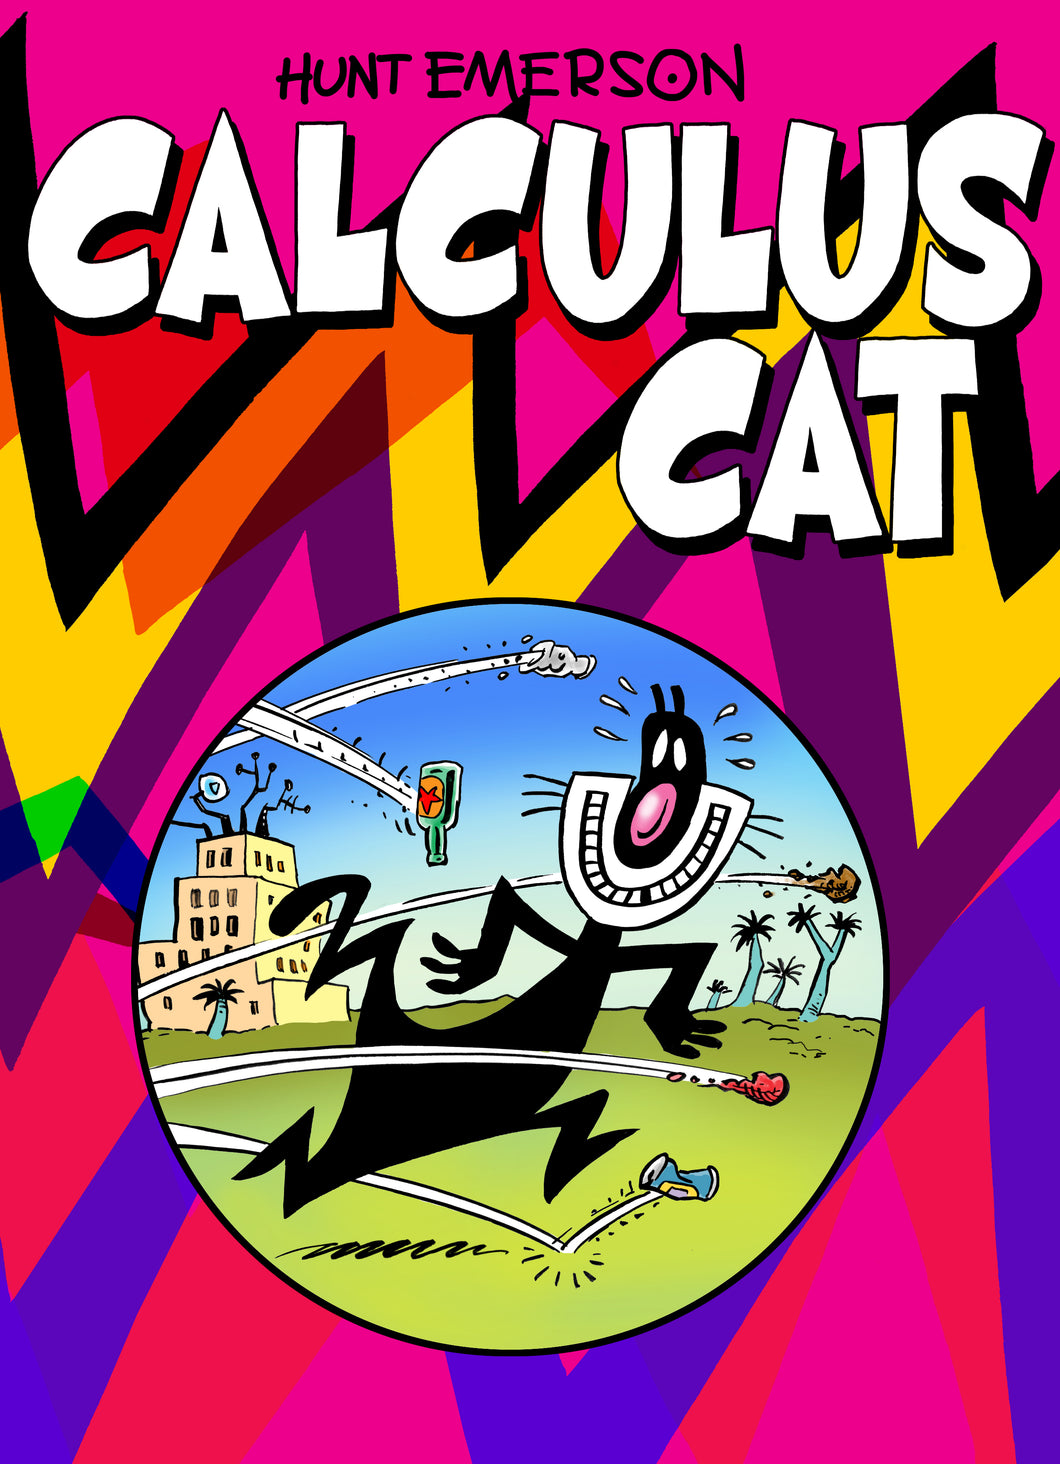 CALCULUS CAT